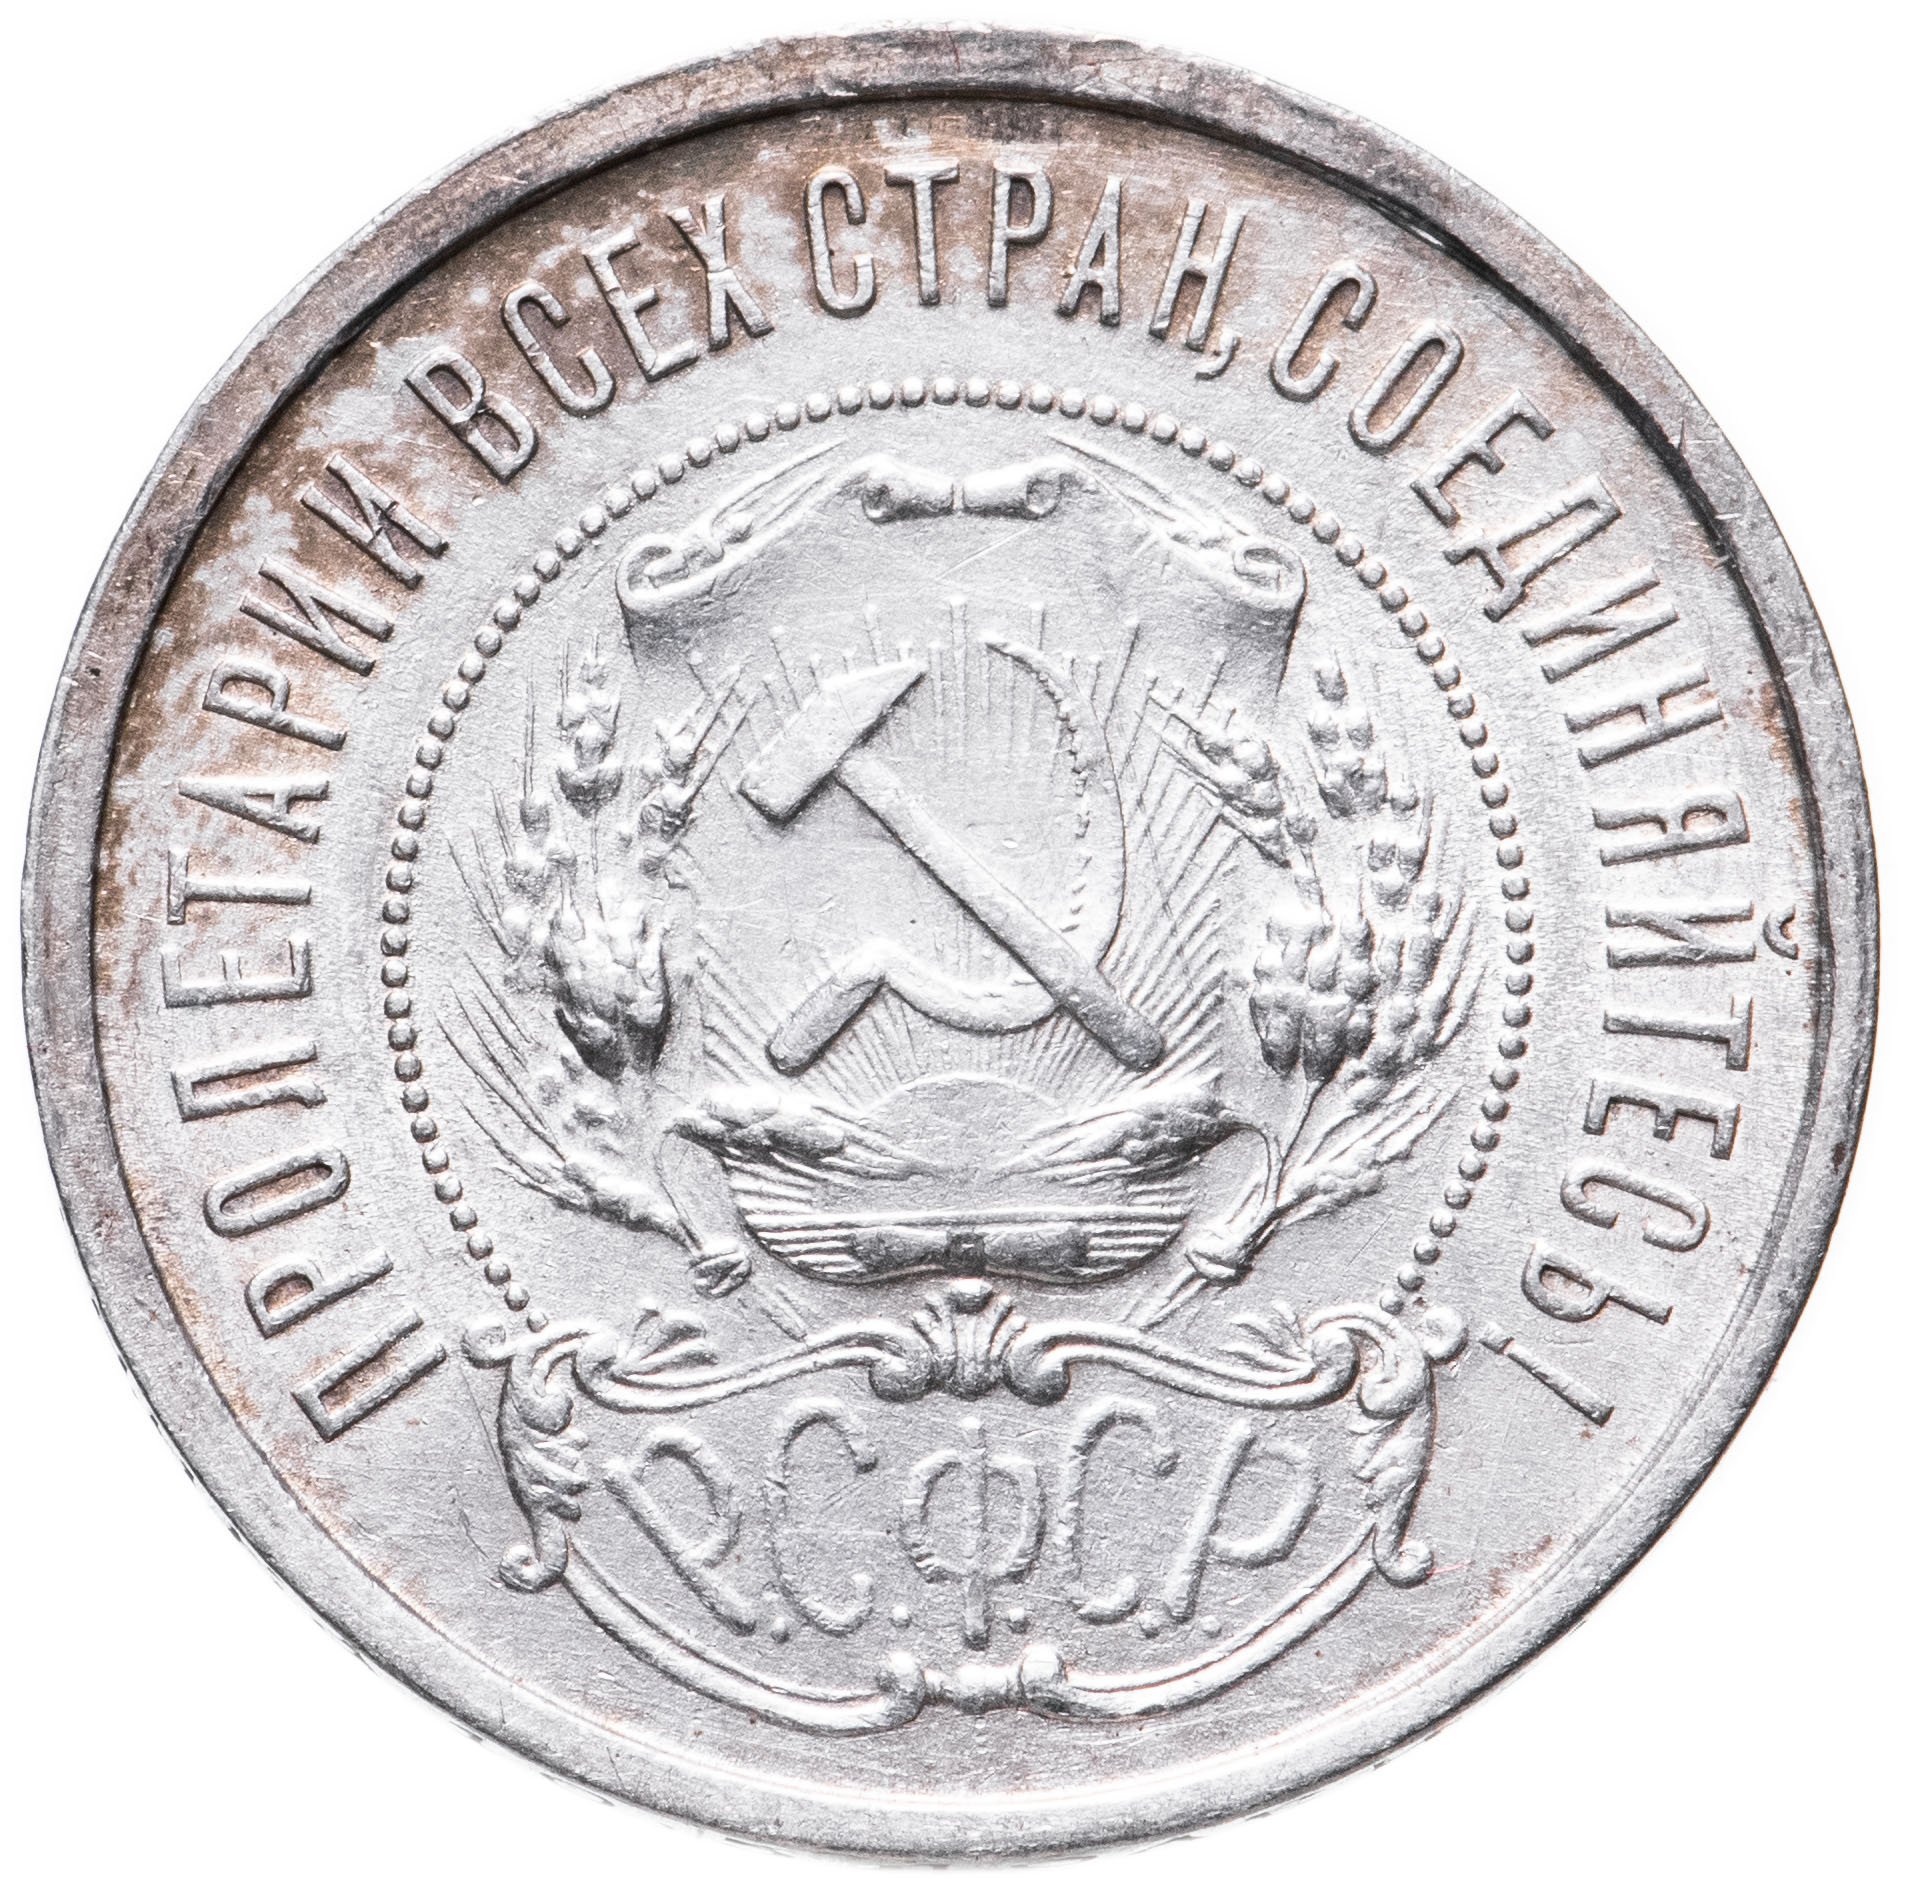 50 Копеек 1921. Монета 50 копеек 1921. Пятьдесят копеек 1921. Монета 2 копейки 1921 года.